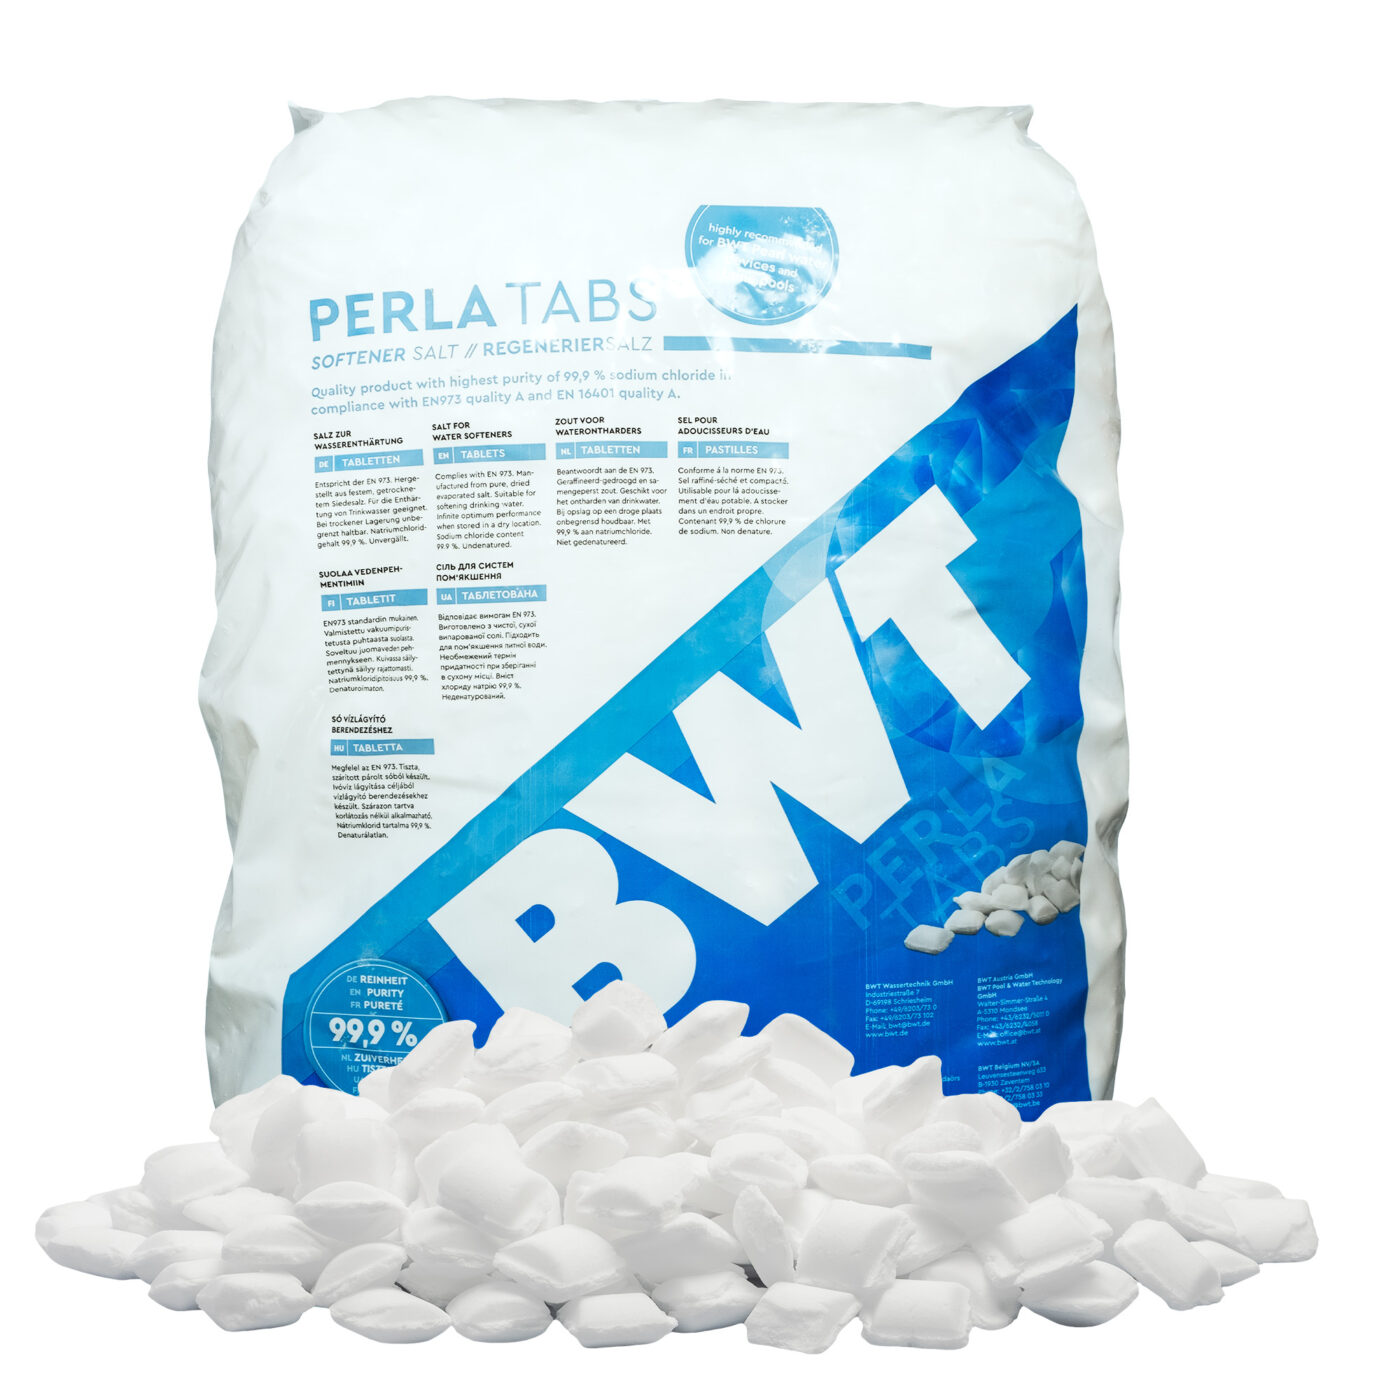 BWT Perla Tabs 25kg  Price Comparison Skinflint UK